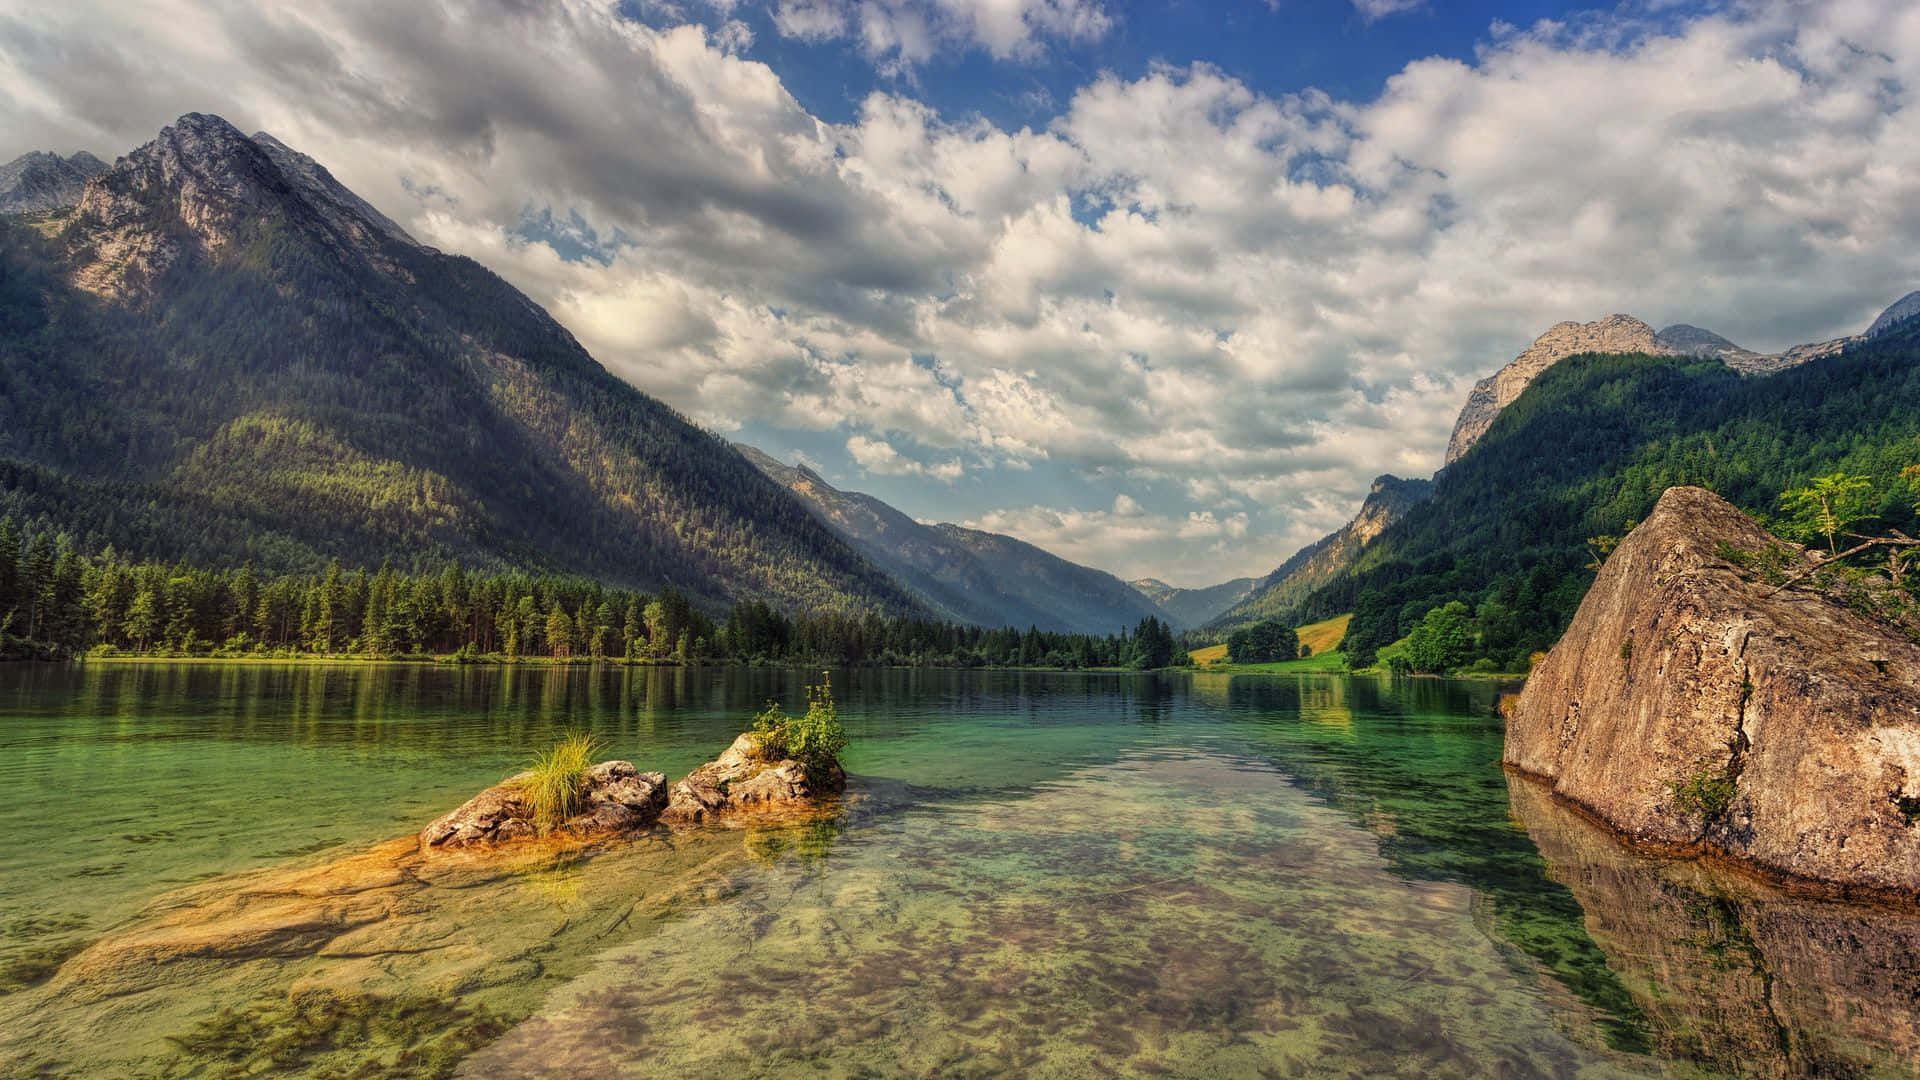 Entdeckensie Ruhe Und Schönheit Mit Einem Faszinierenden Blick Auf Einen Atemberaubenden See. Wallpaper